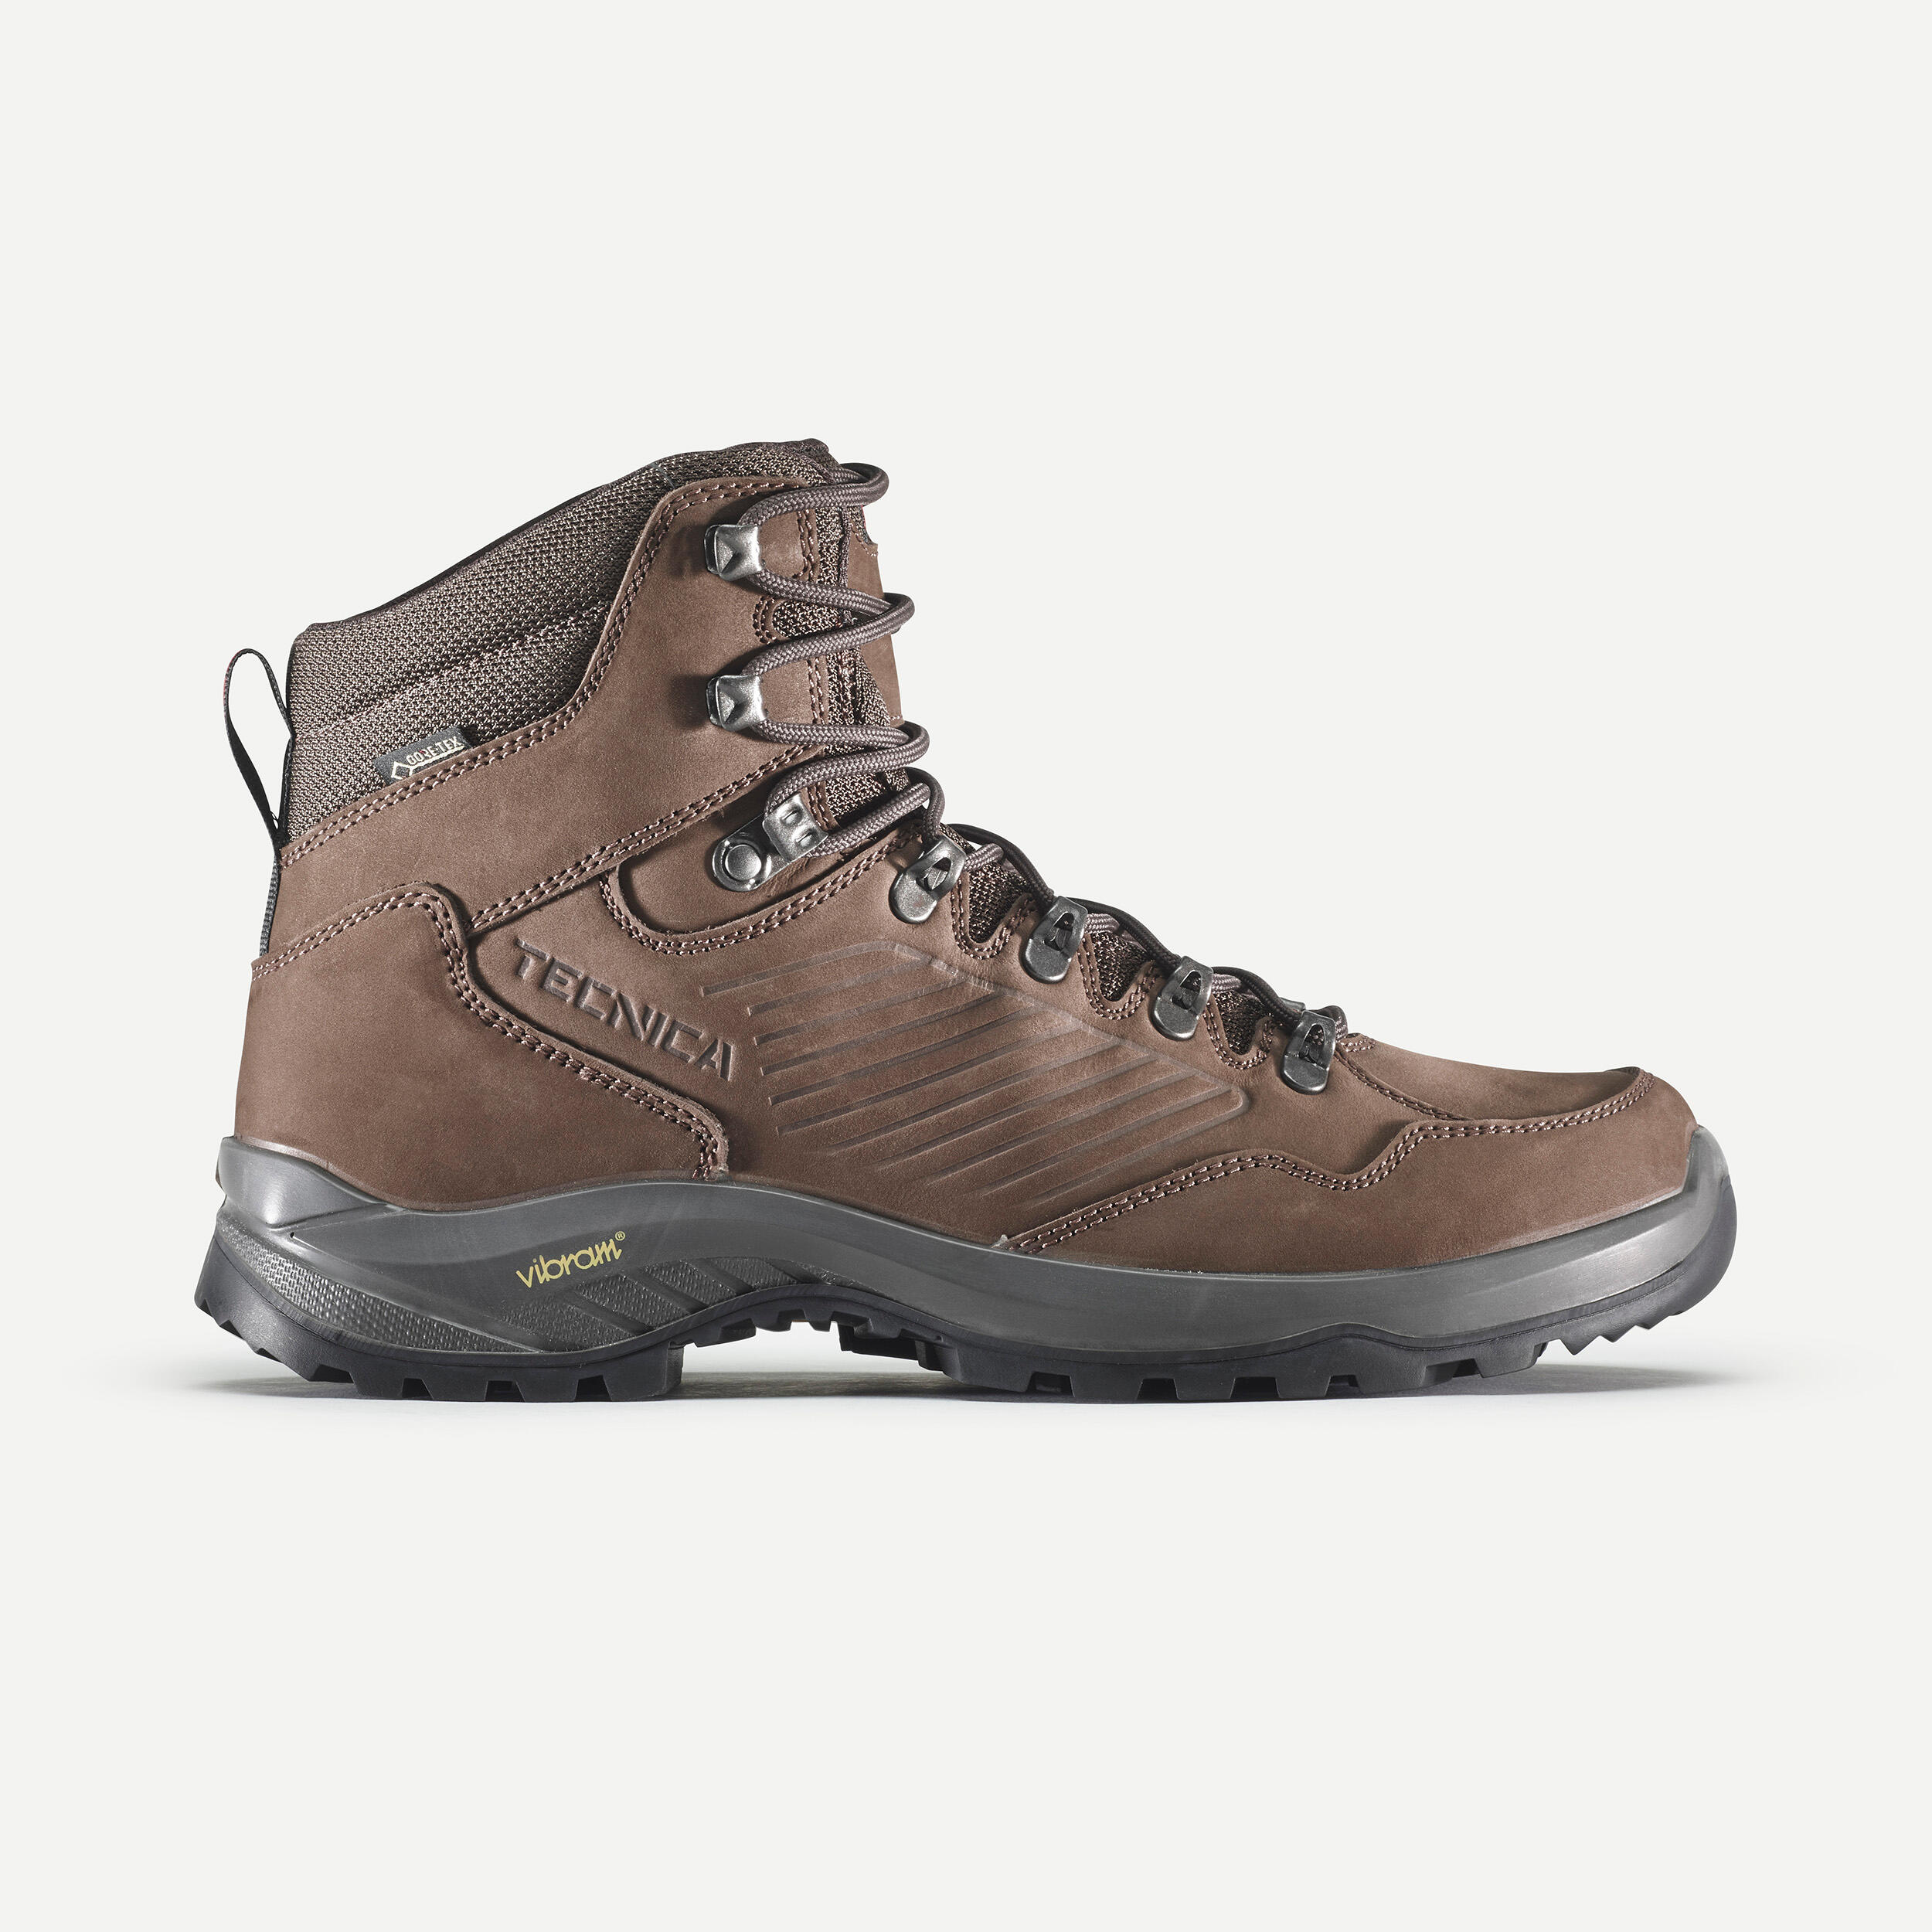 Men's waterproof hiking boots - Technica Torena Gore-Tex 1/6